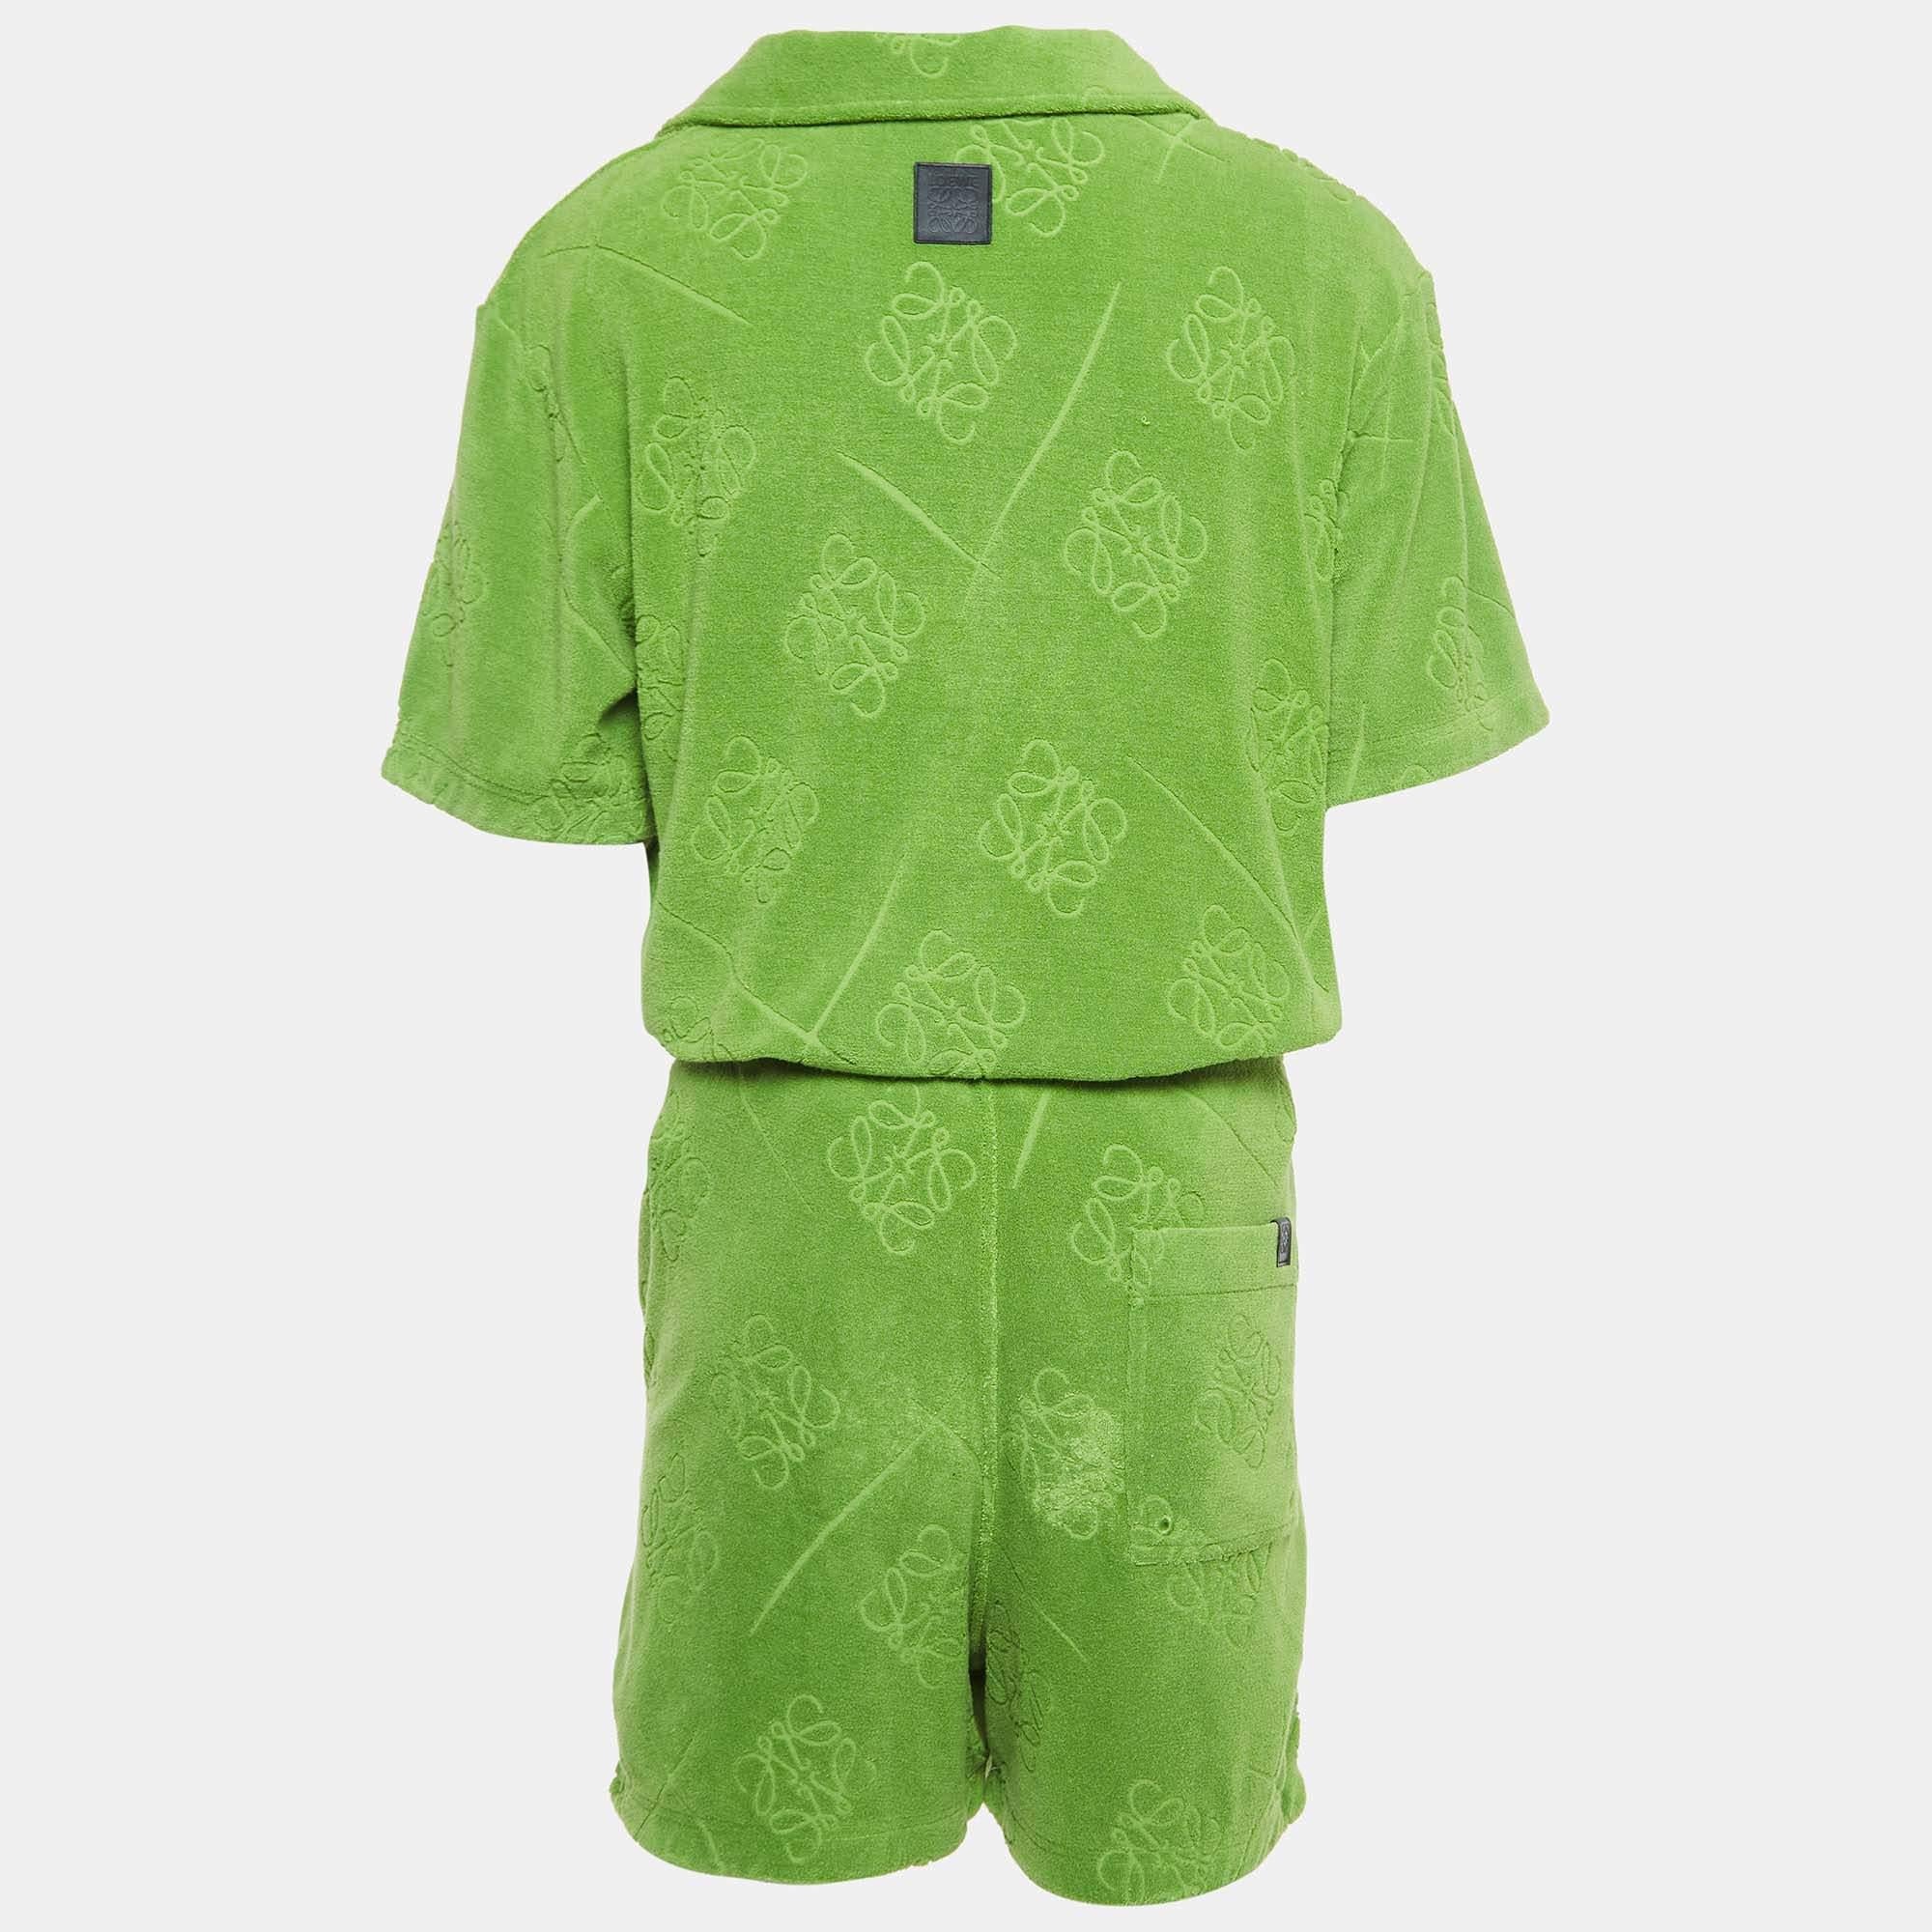 La collection Loewe x Paula Ibiza est conçue avec des détails ludiques et des couleurs tendance. Confectionné en coton éponge, cet ensemble chemise et short présente un anagramme vert, des manches courtes et une silhouette décontractée.

